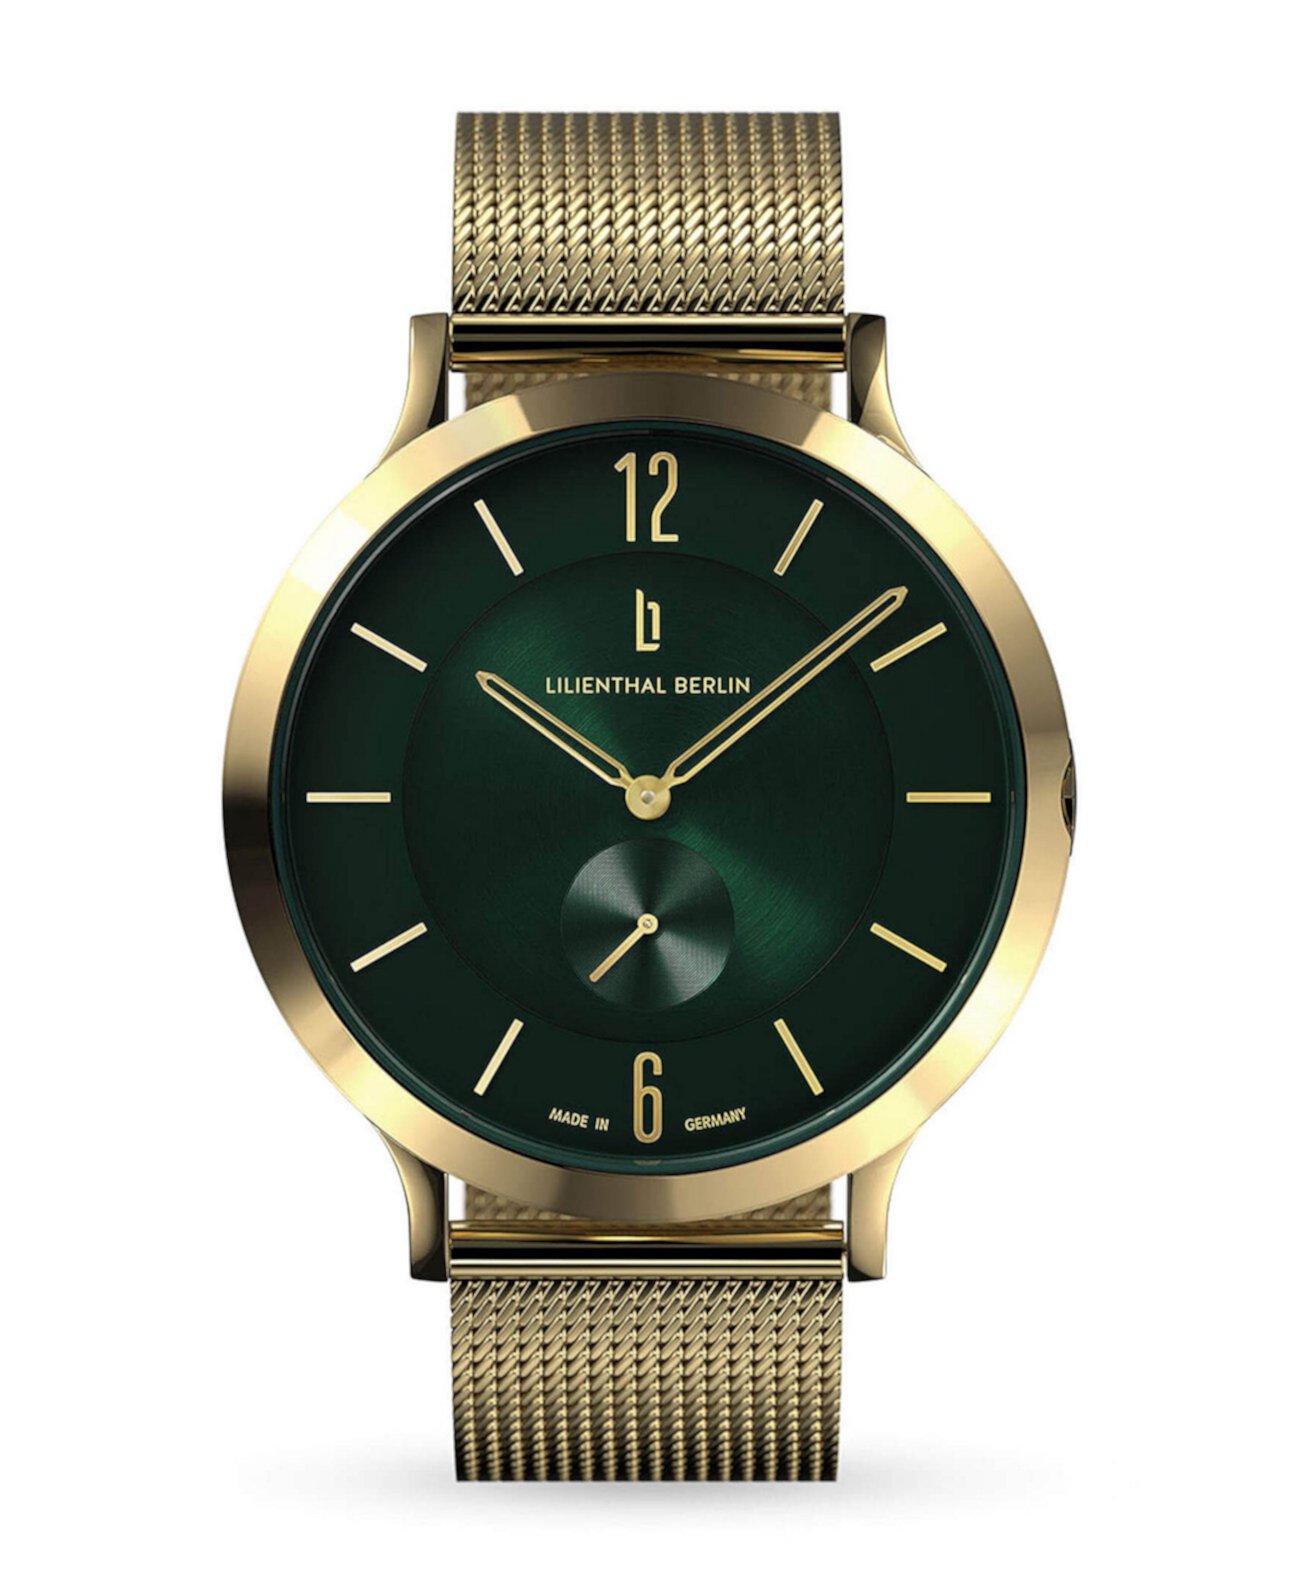 Мужские классические золотисто-зеленые золотистые часы из нержавеющей стали с сеткой, 42 мм Lilienthal Berlin